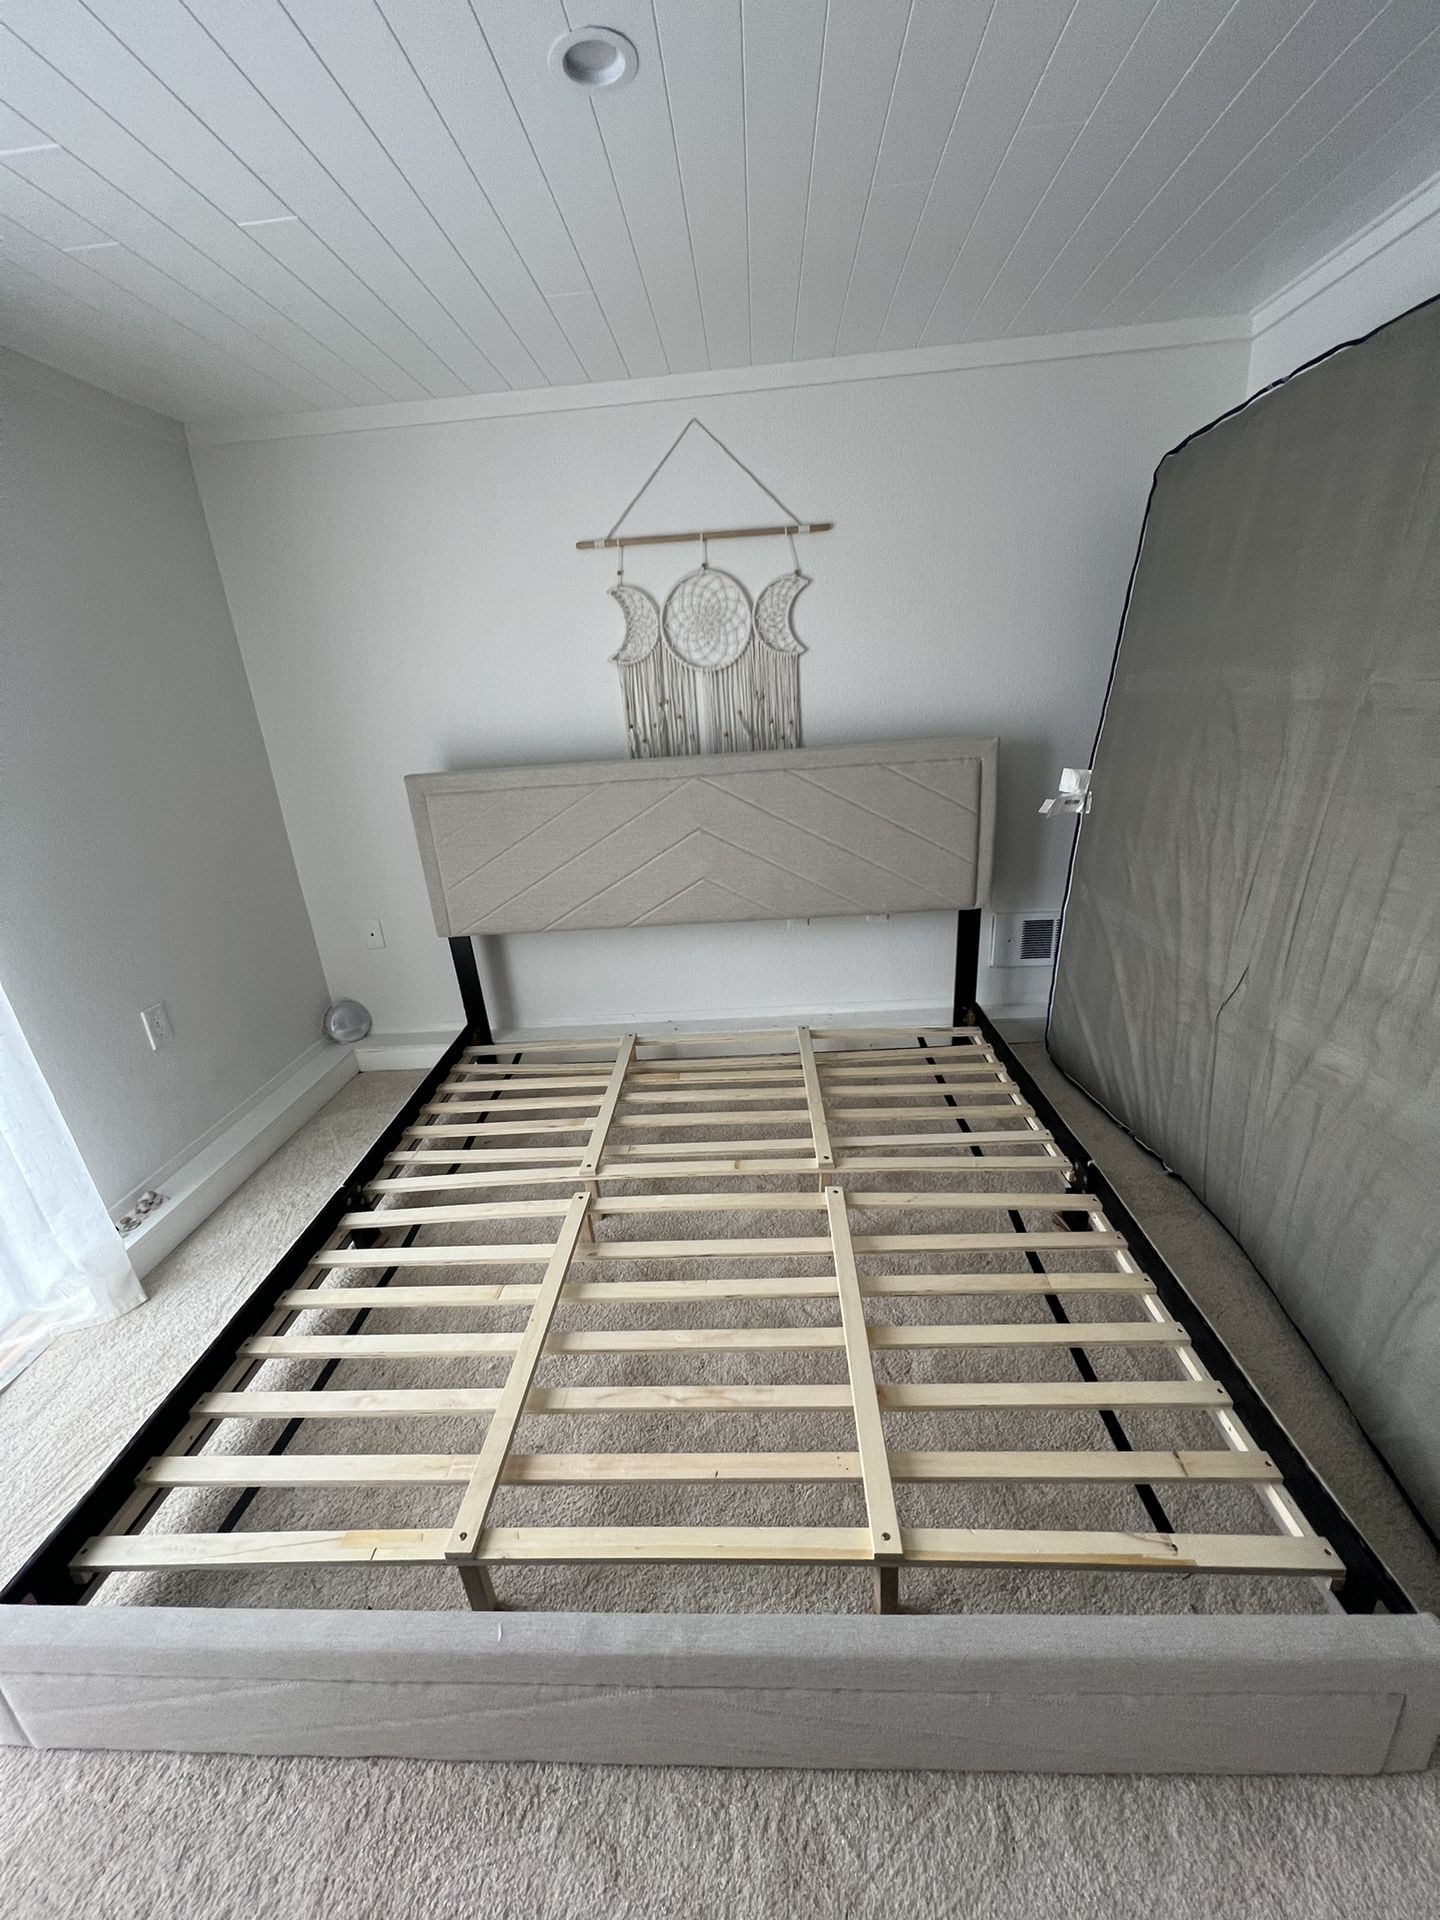 King Bed frame 